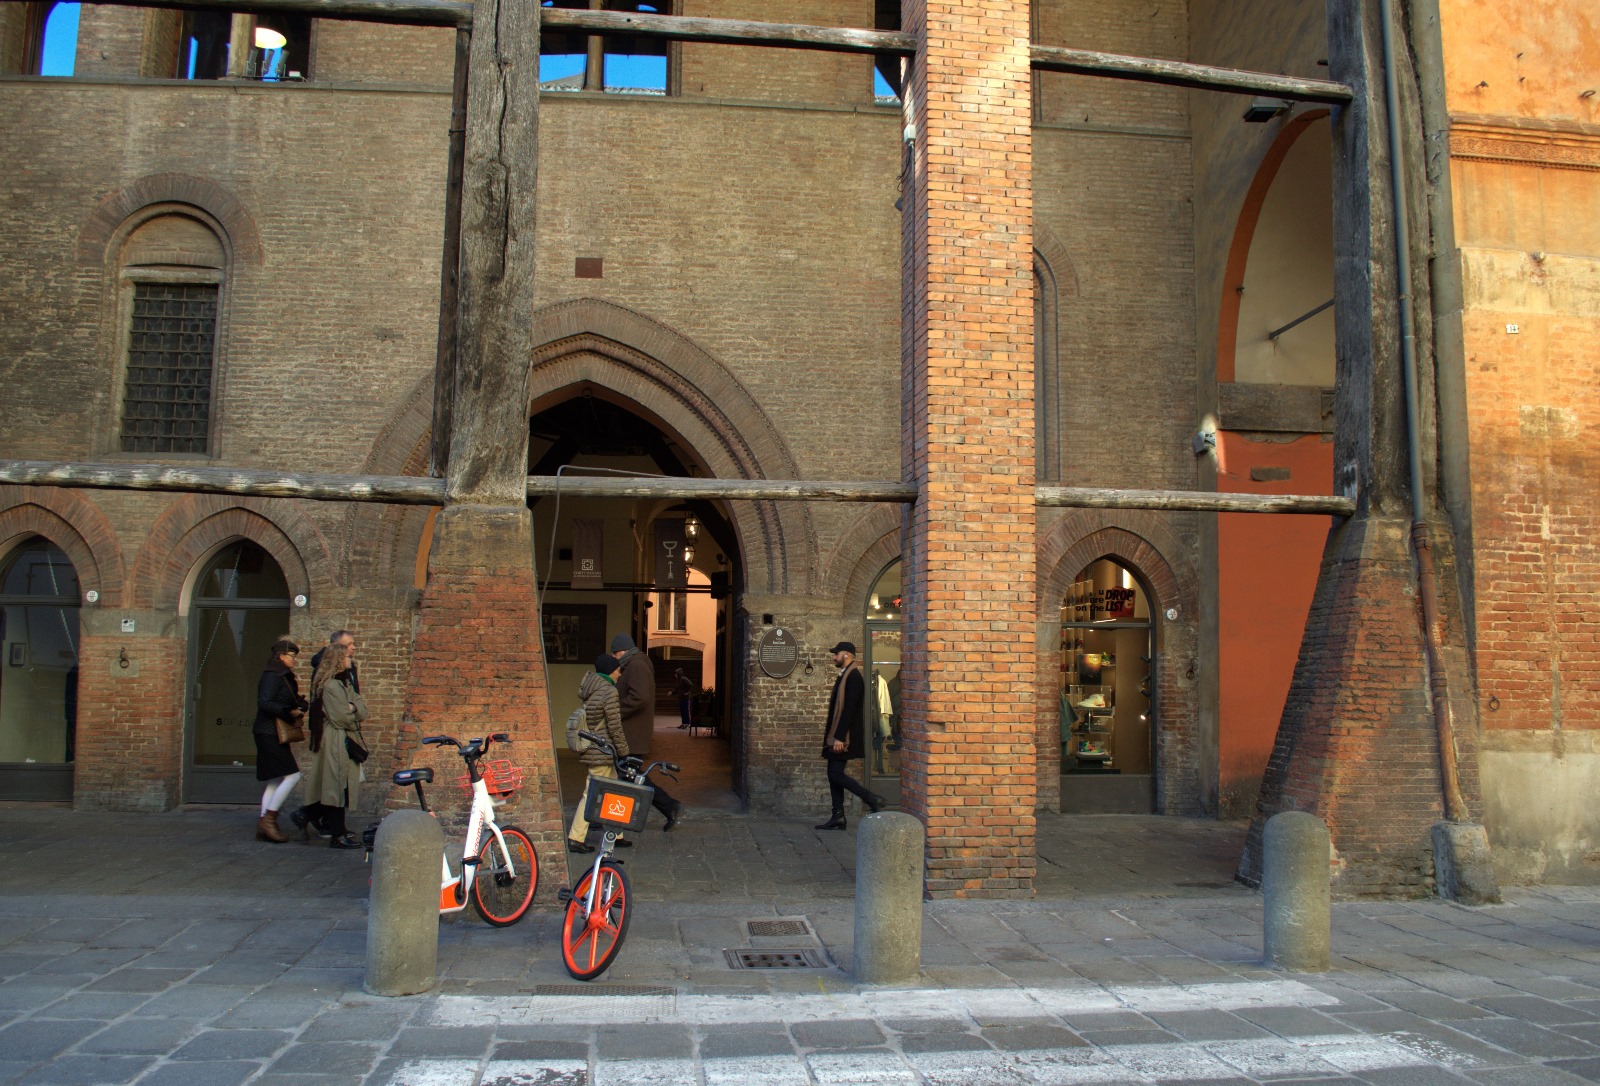 À Casa Isolani, l'élégance rencontre l'histoire sur la Piazza San Stefano en Italie. Une résidence empreinte de charme au cœur de Bologne, où le raffinement architectural rencontre l'effervescence de l'une des plus belles places de la ville.